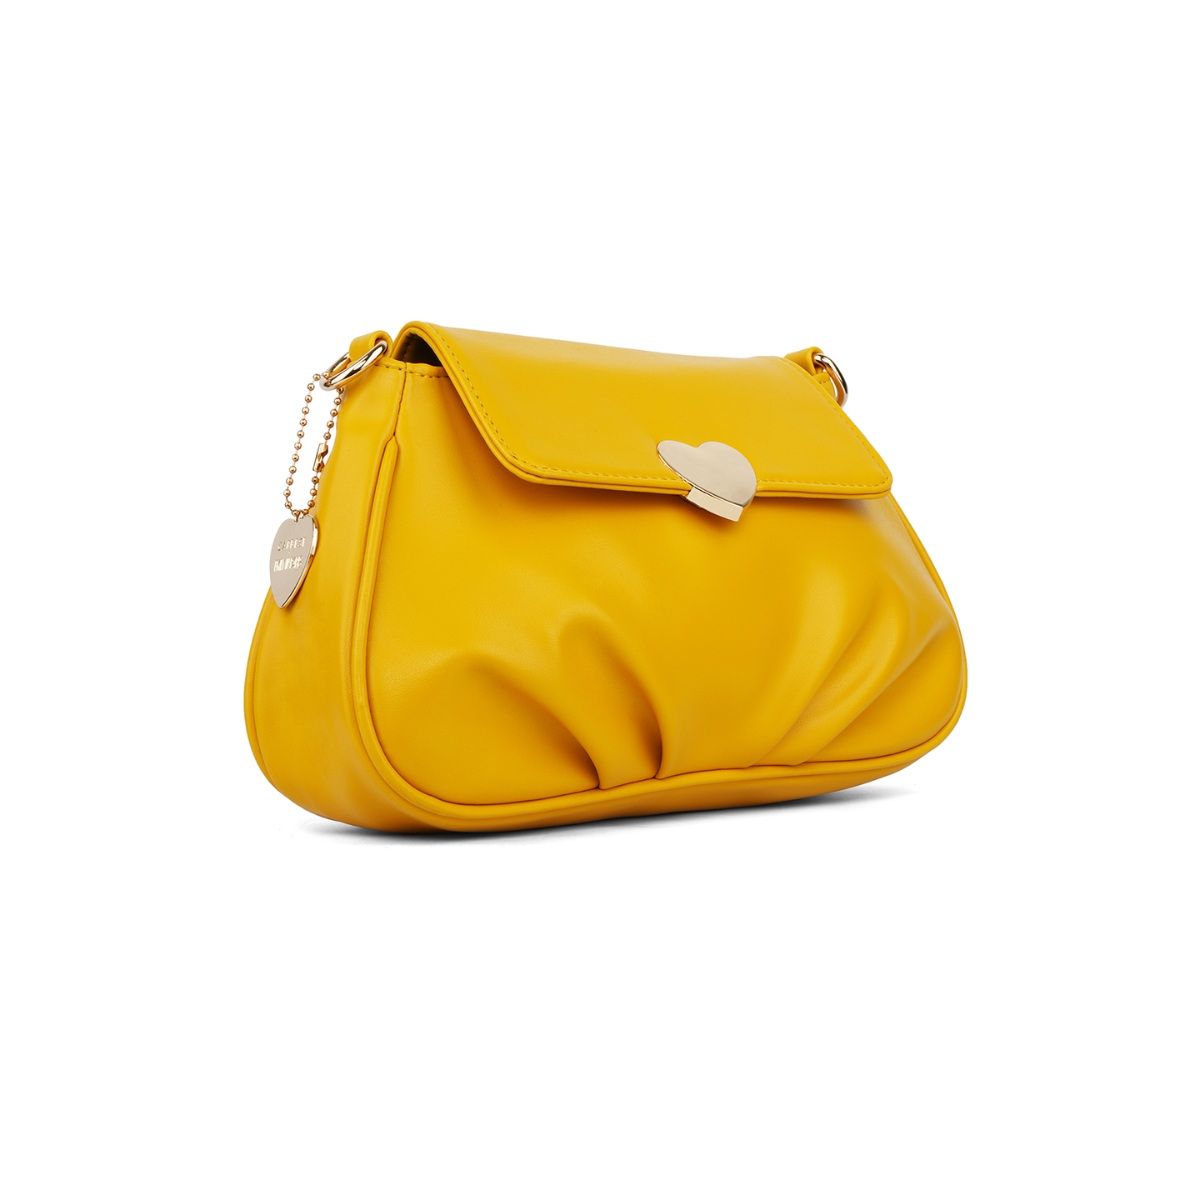 Buy Haute Sauce Women Yellow Handbag Yellow Online @ Best Price in India |  Flipkart.com